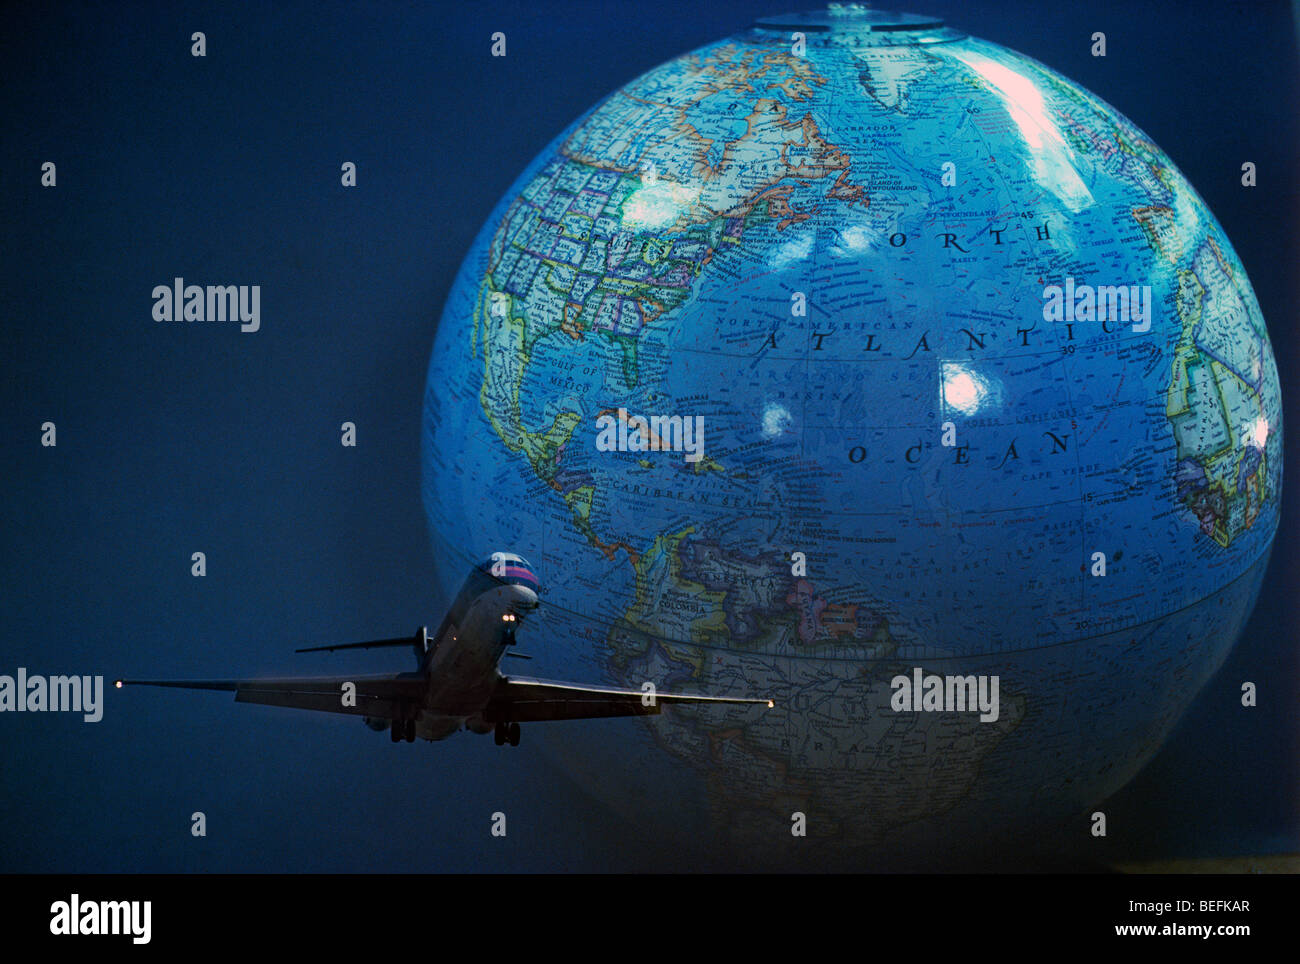 Airplane circling  globe symbolizing world travel Stock Photo